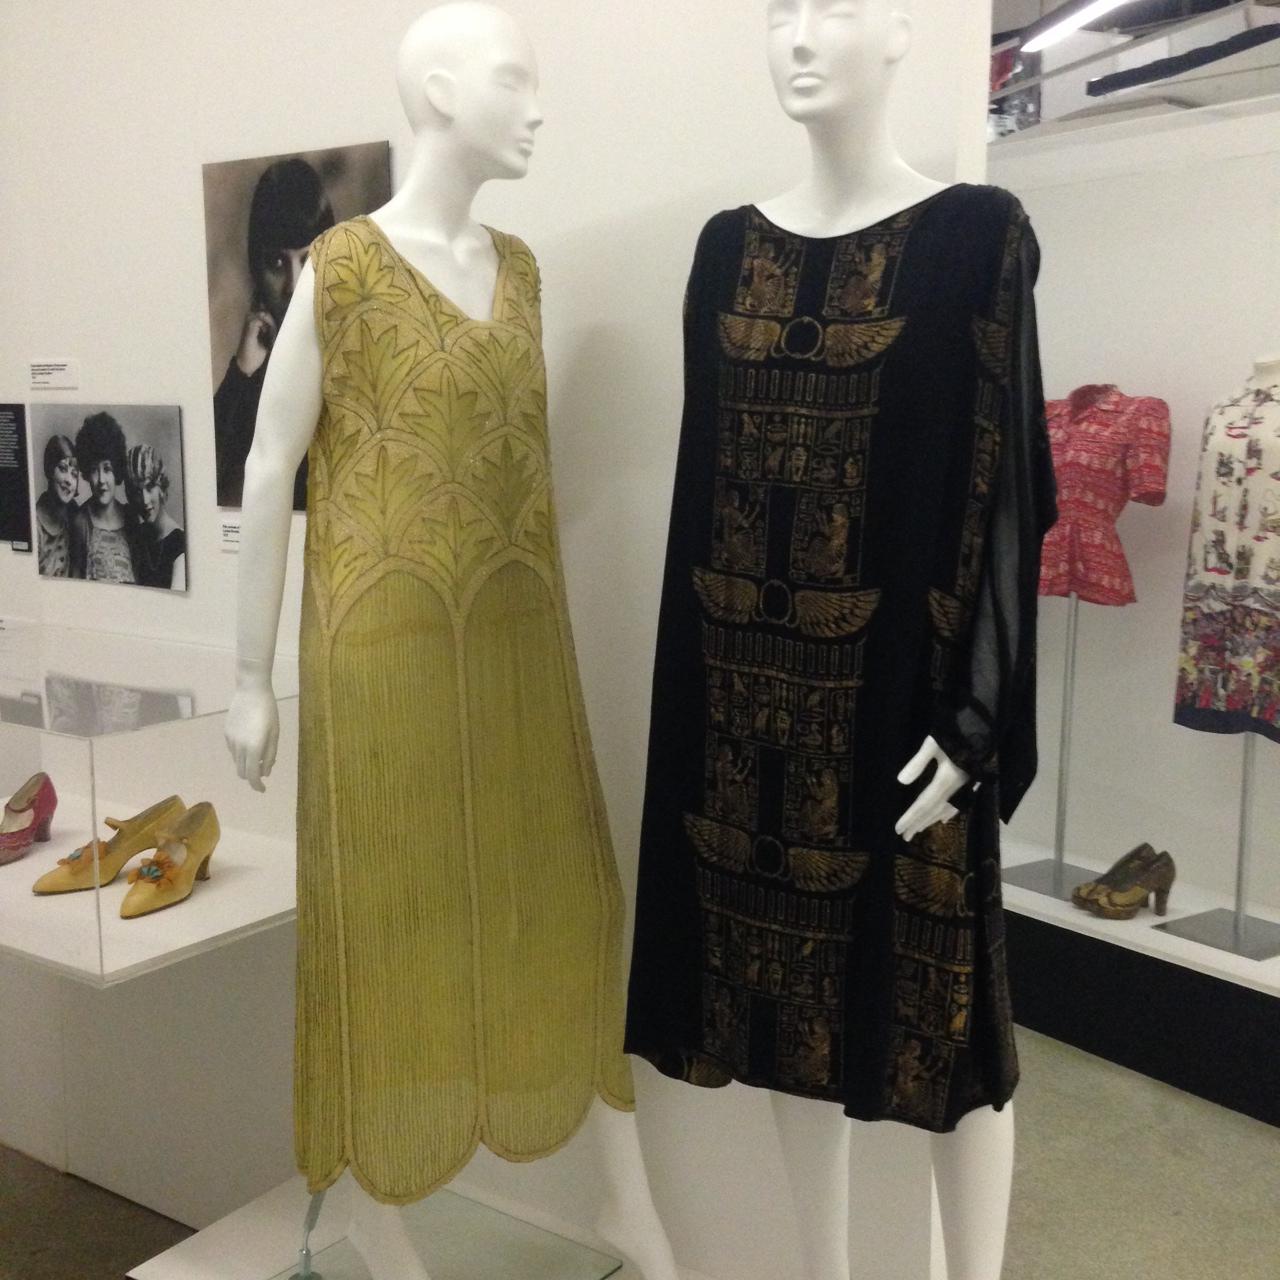 exposition-women-fashion-power-design-museum-londres